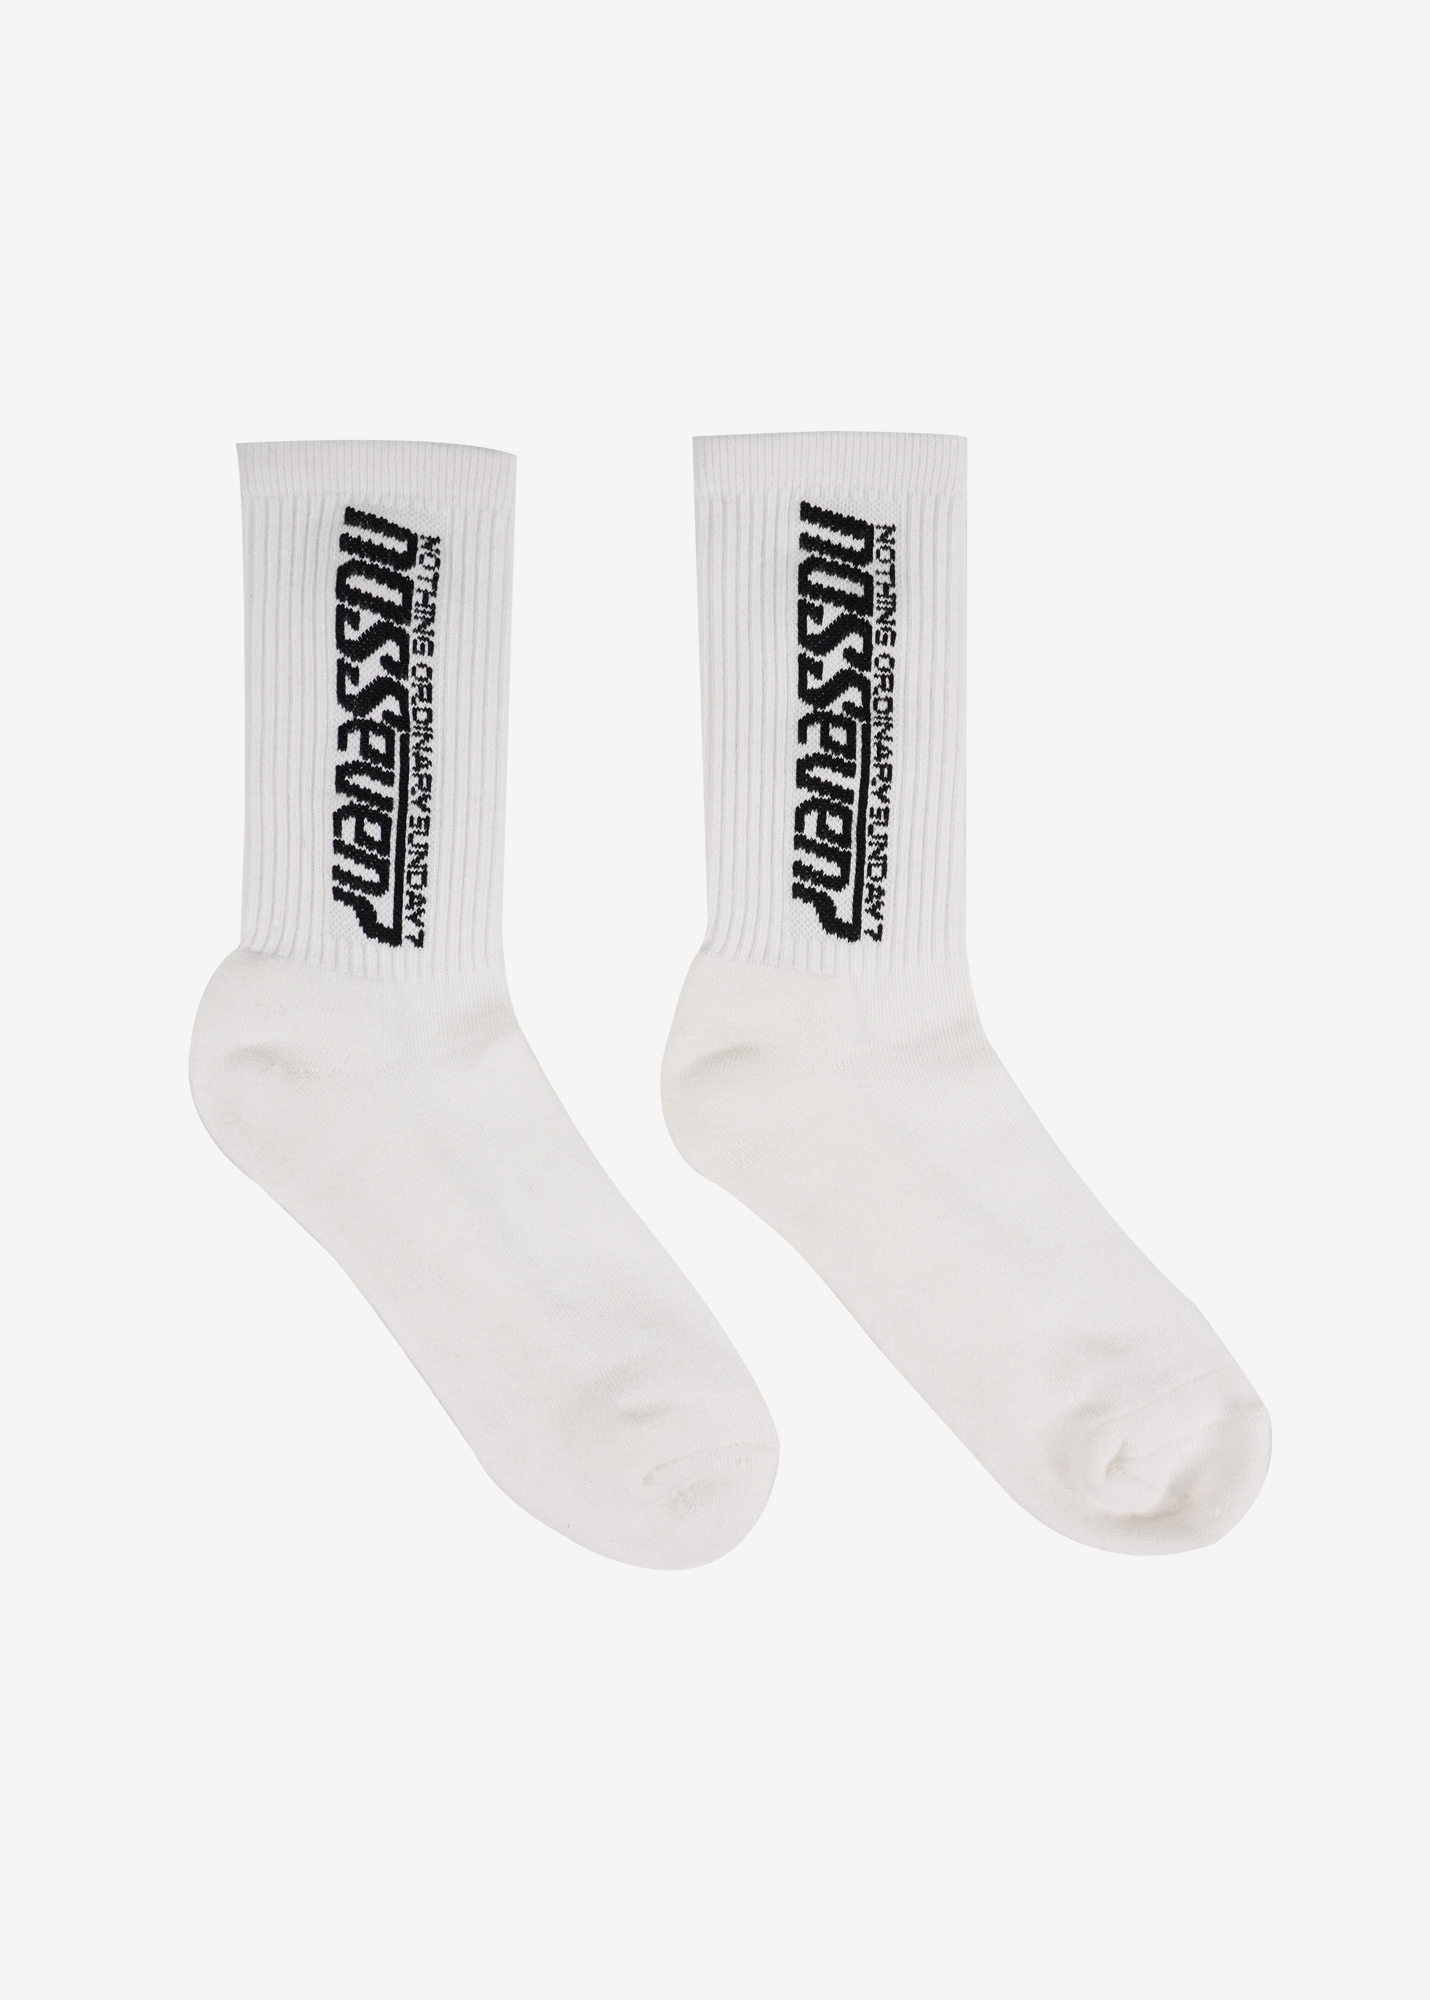 NOS7 Lettering Socks - White